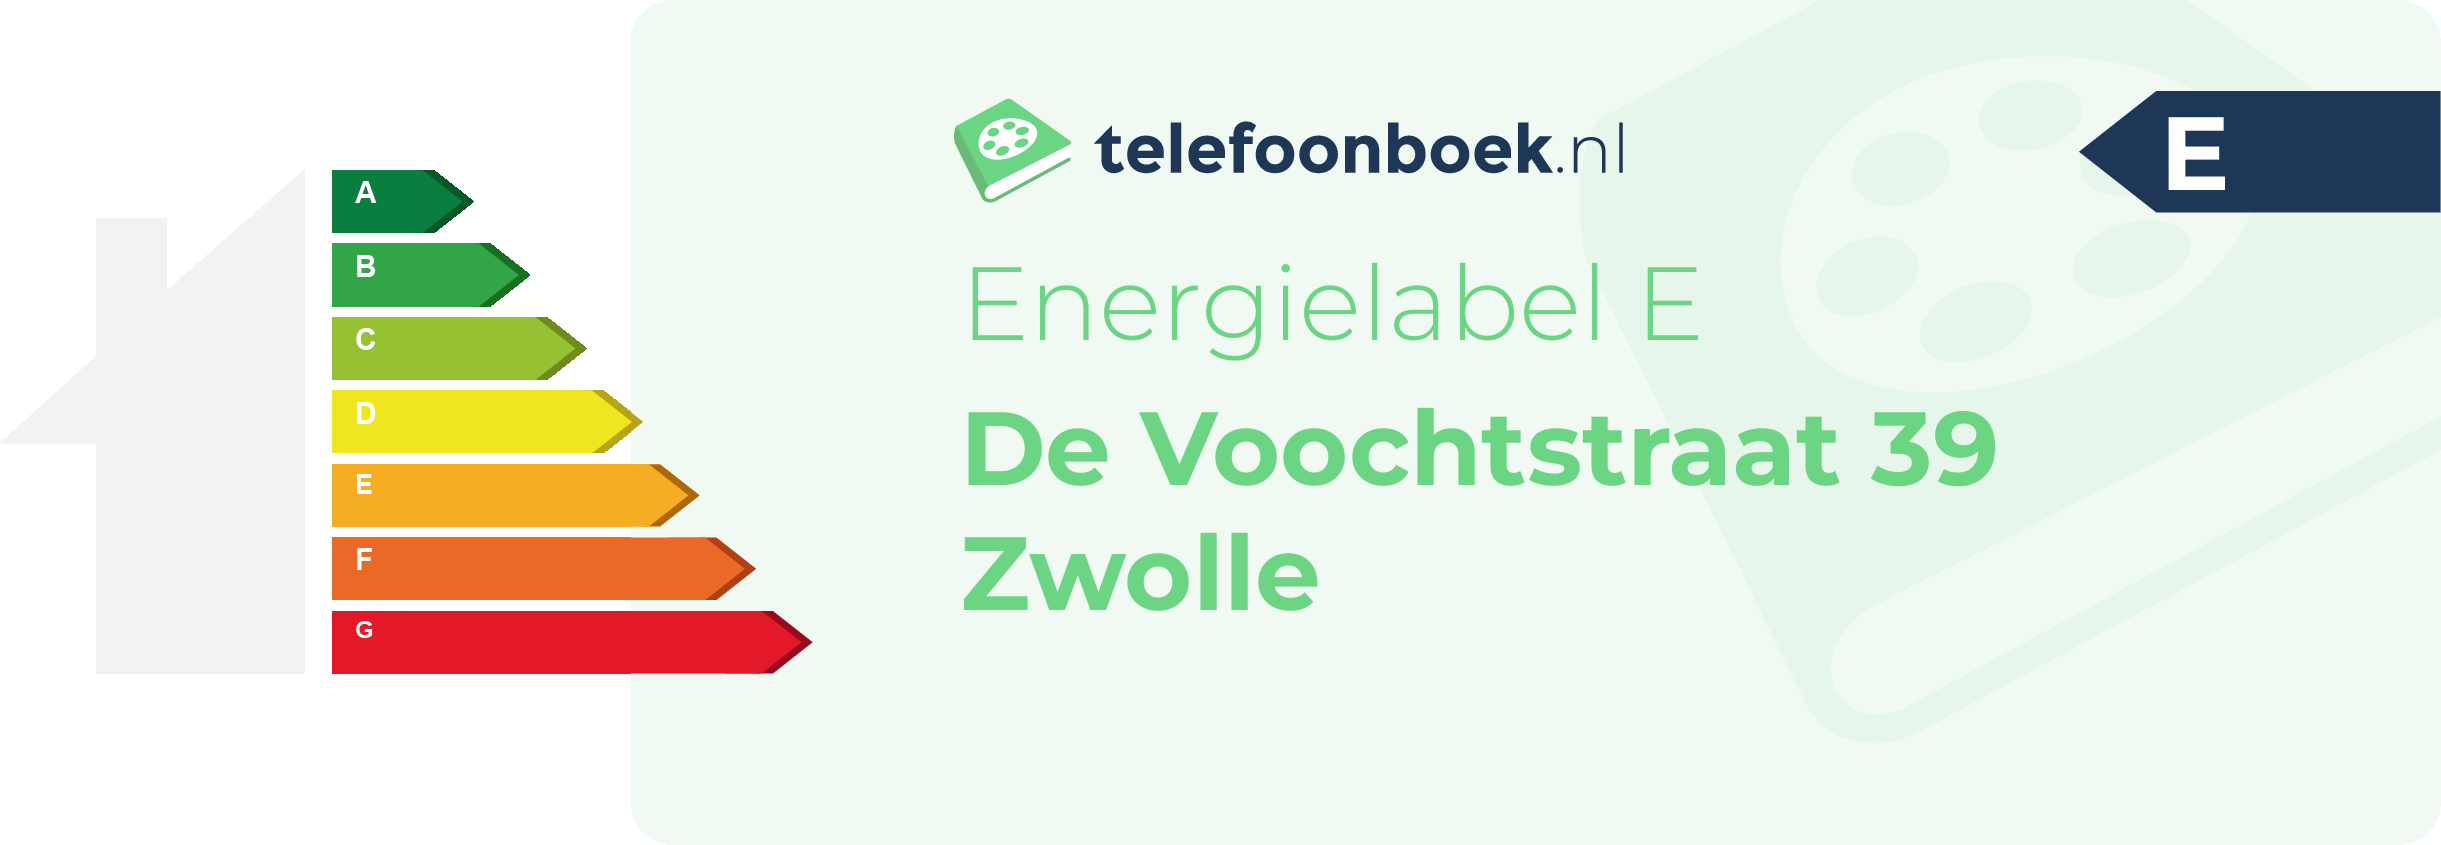 Energielabel De Voochtstraat 39 Zwolle